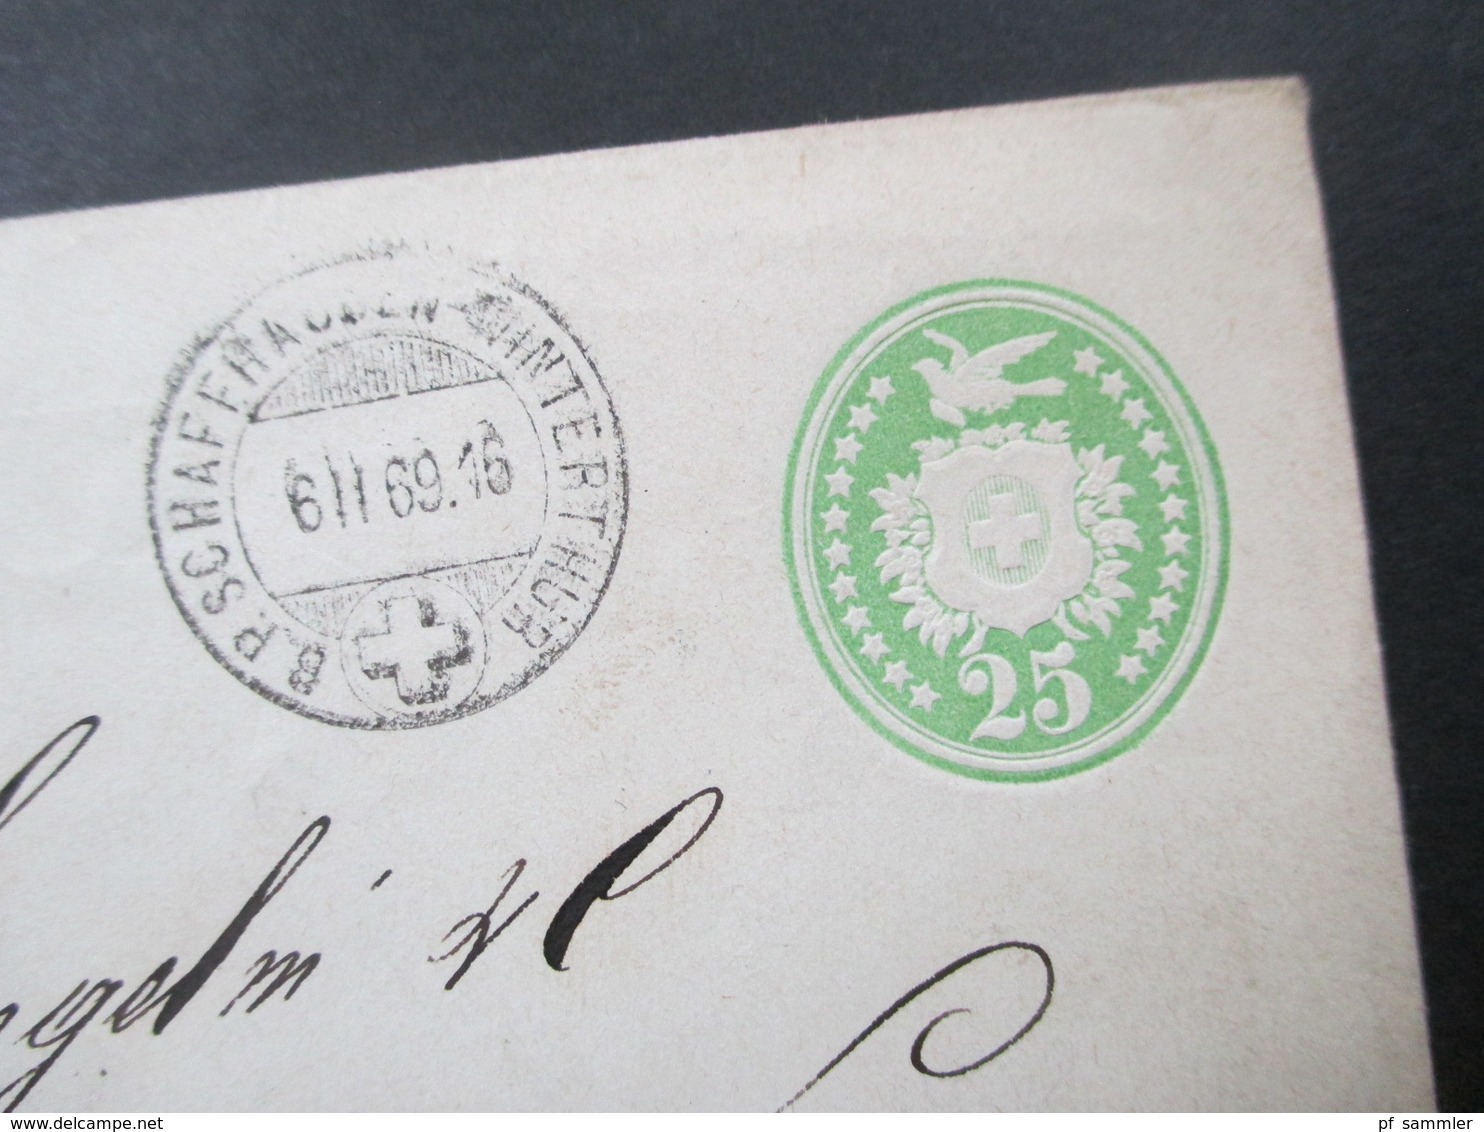 Schweiz ab 1870 Brieftaube GA Umschläge 8 GA einige PD Stempel und ins Ausland! schöne Stempel! Wappen